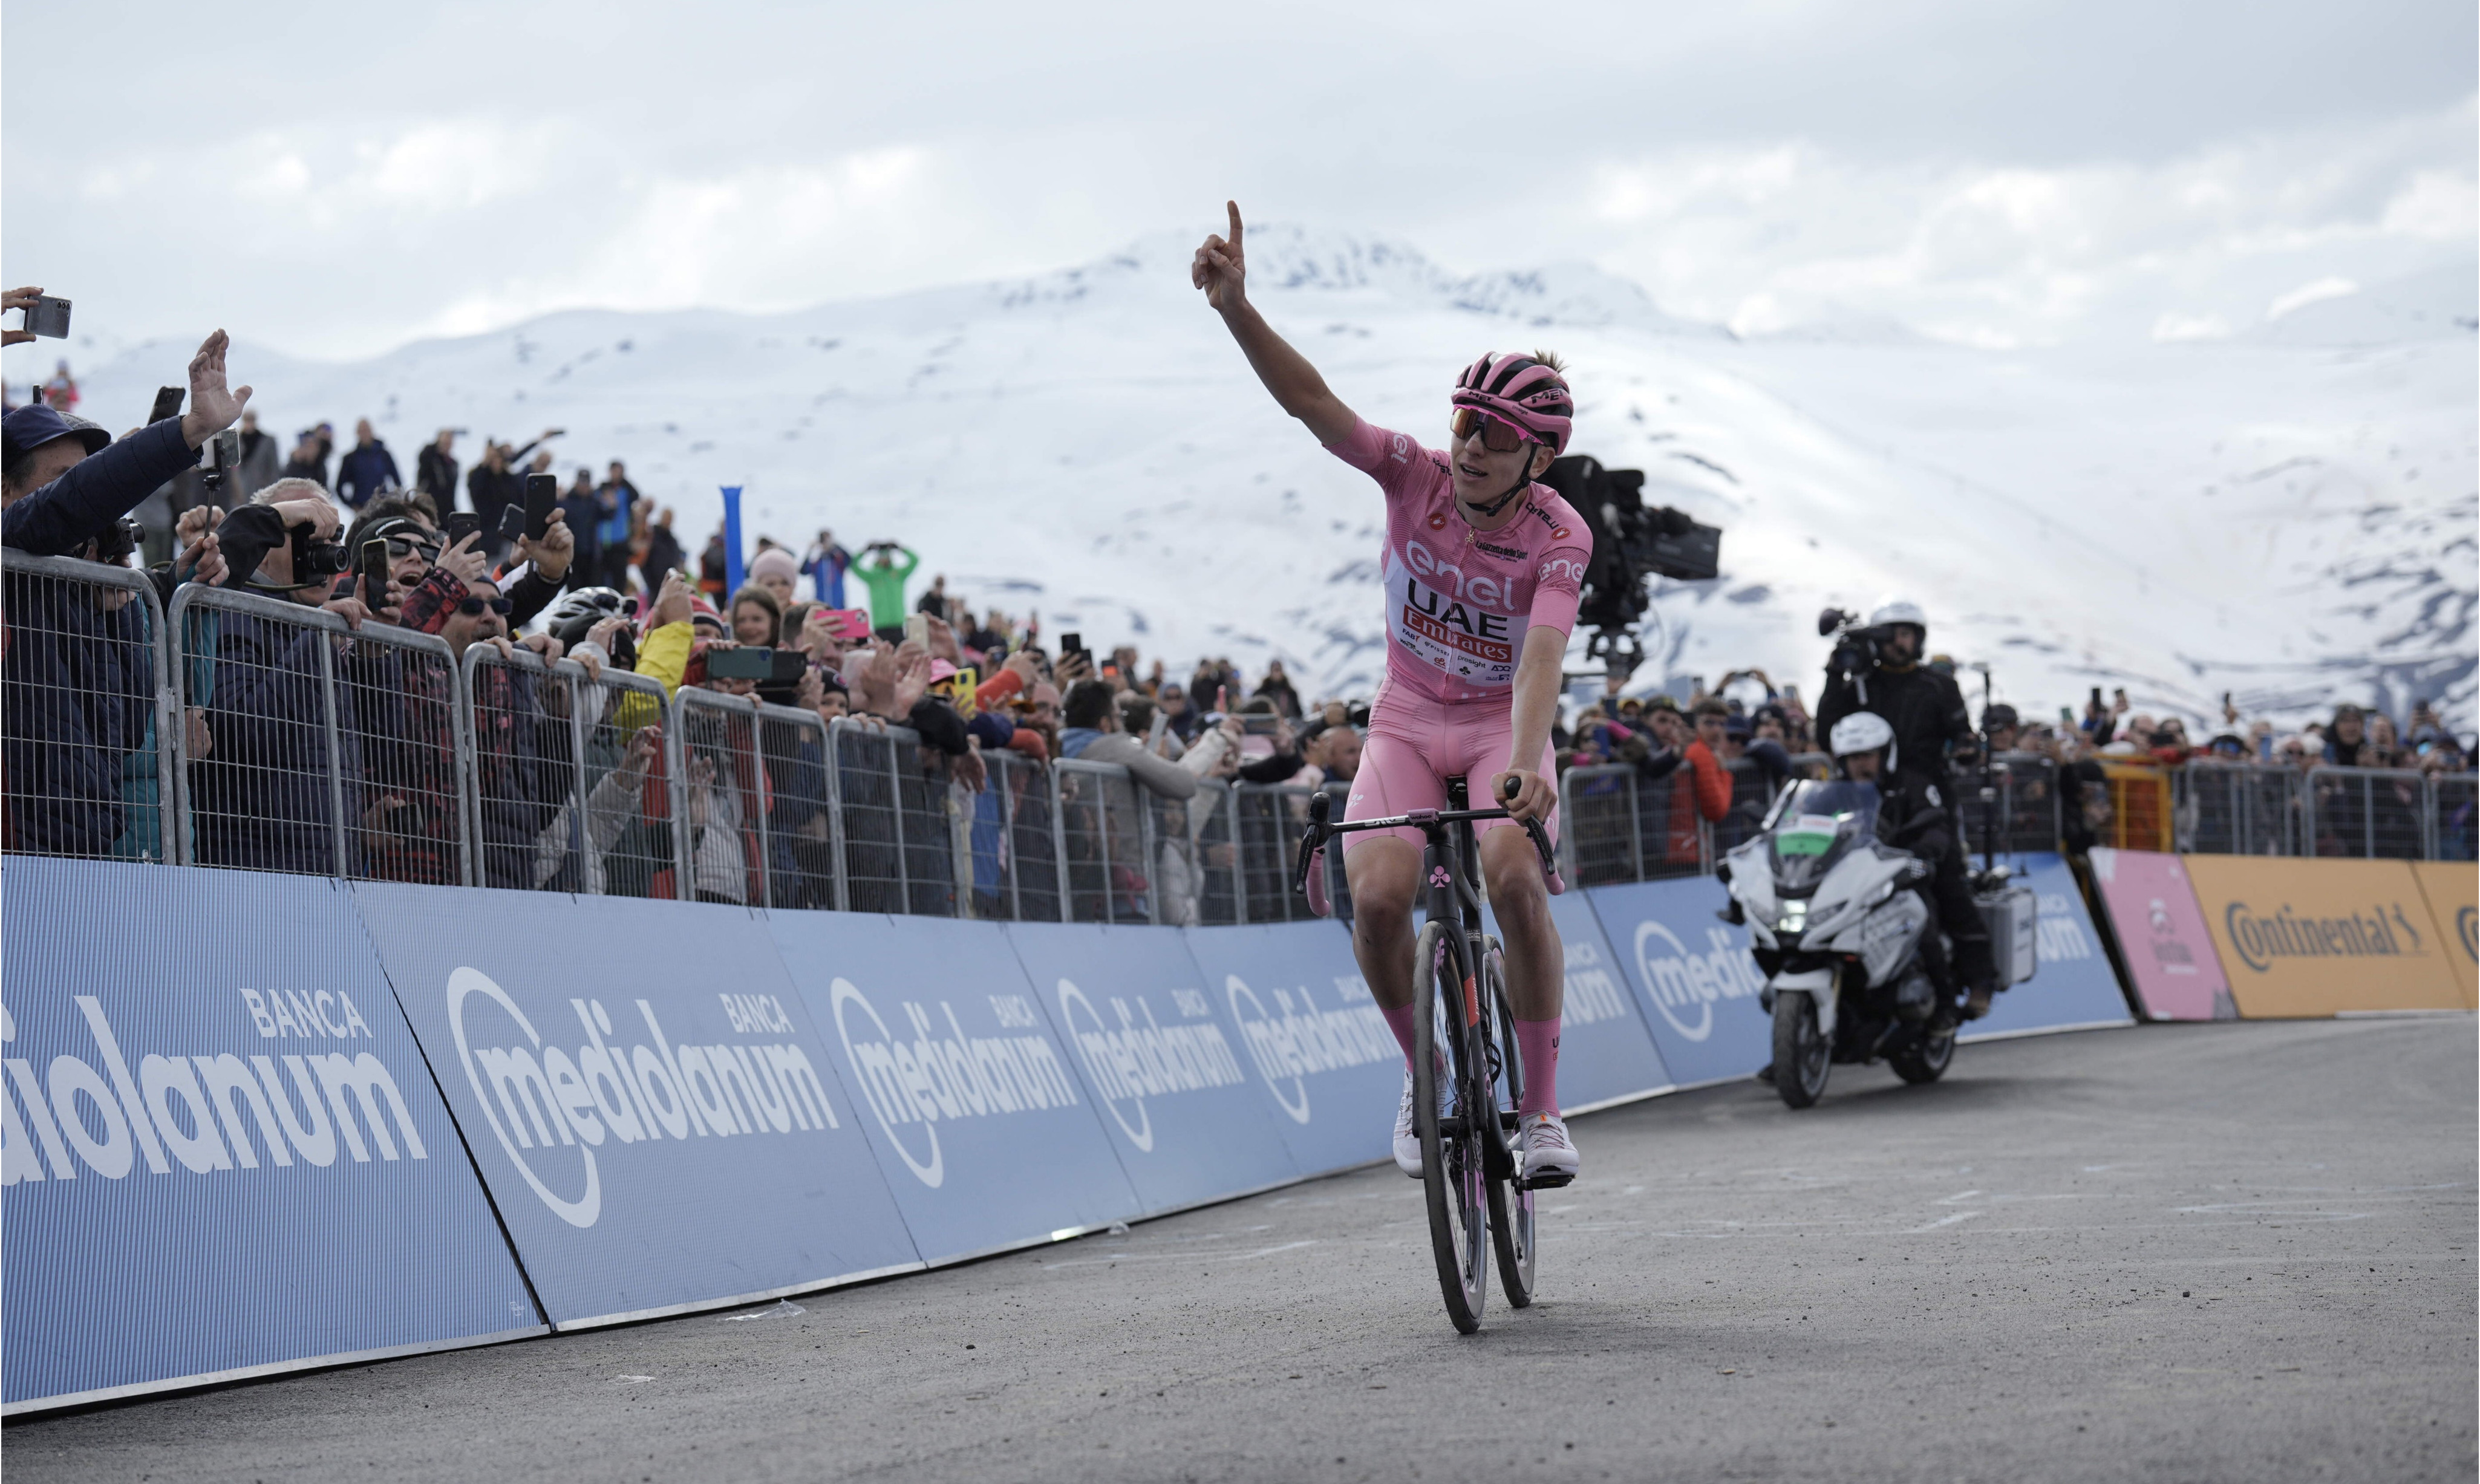 Четверта перемога Погачара: результати 15 етапу Джиро д'Італія